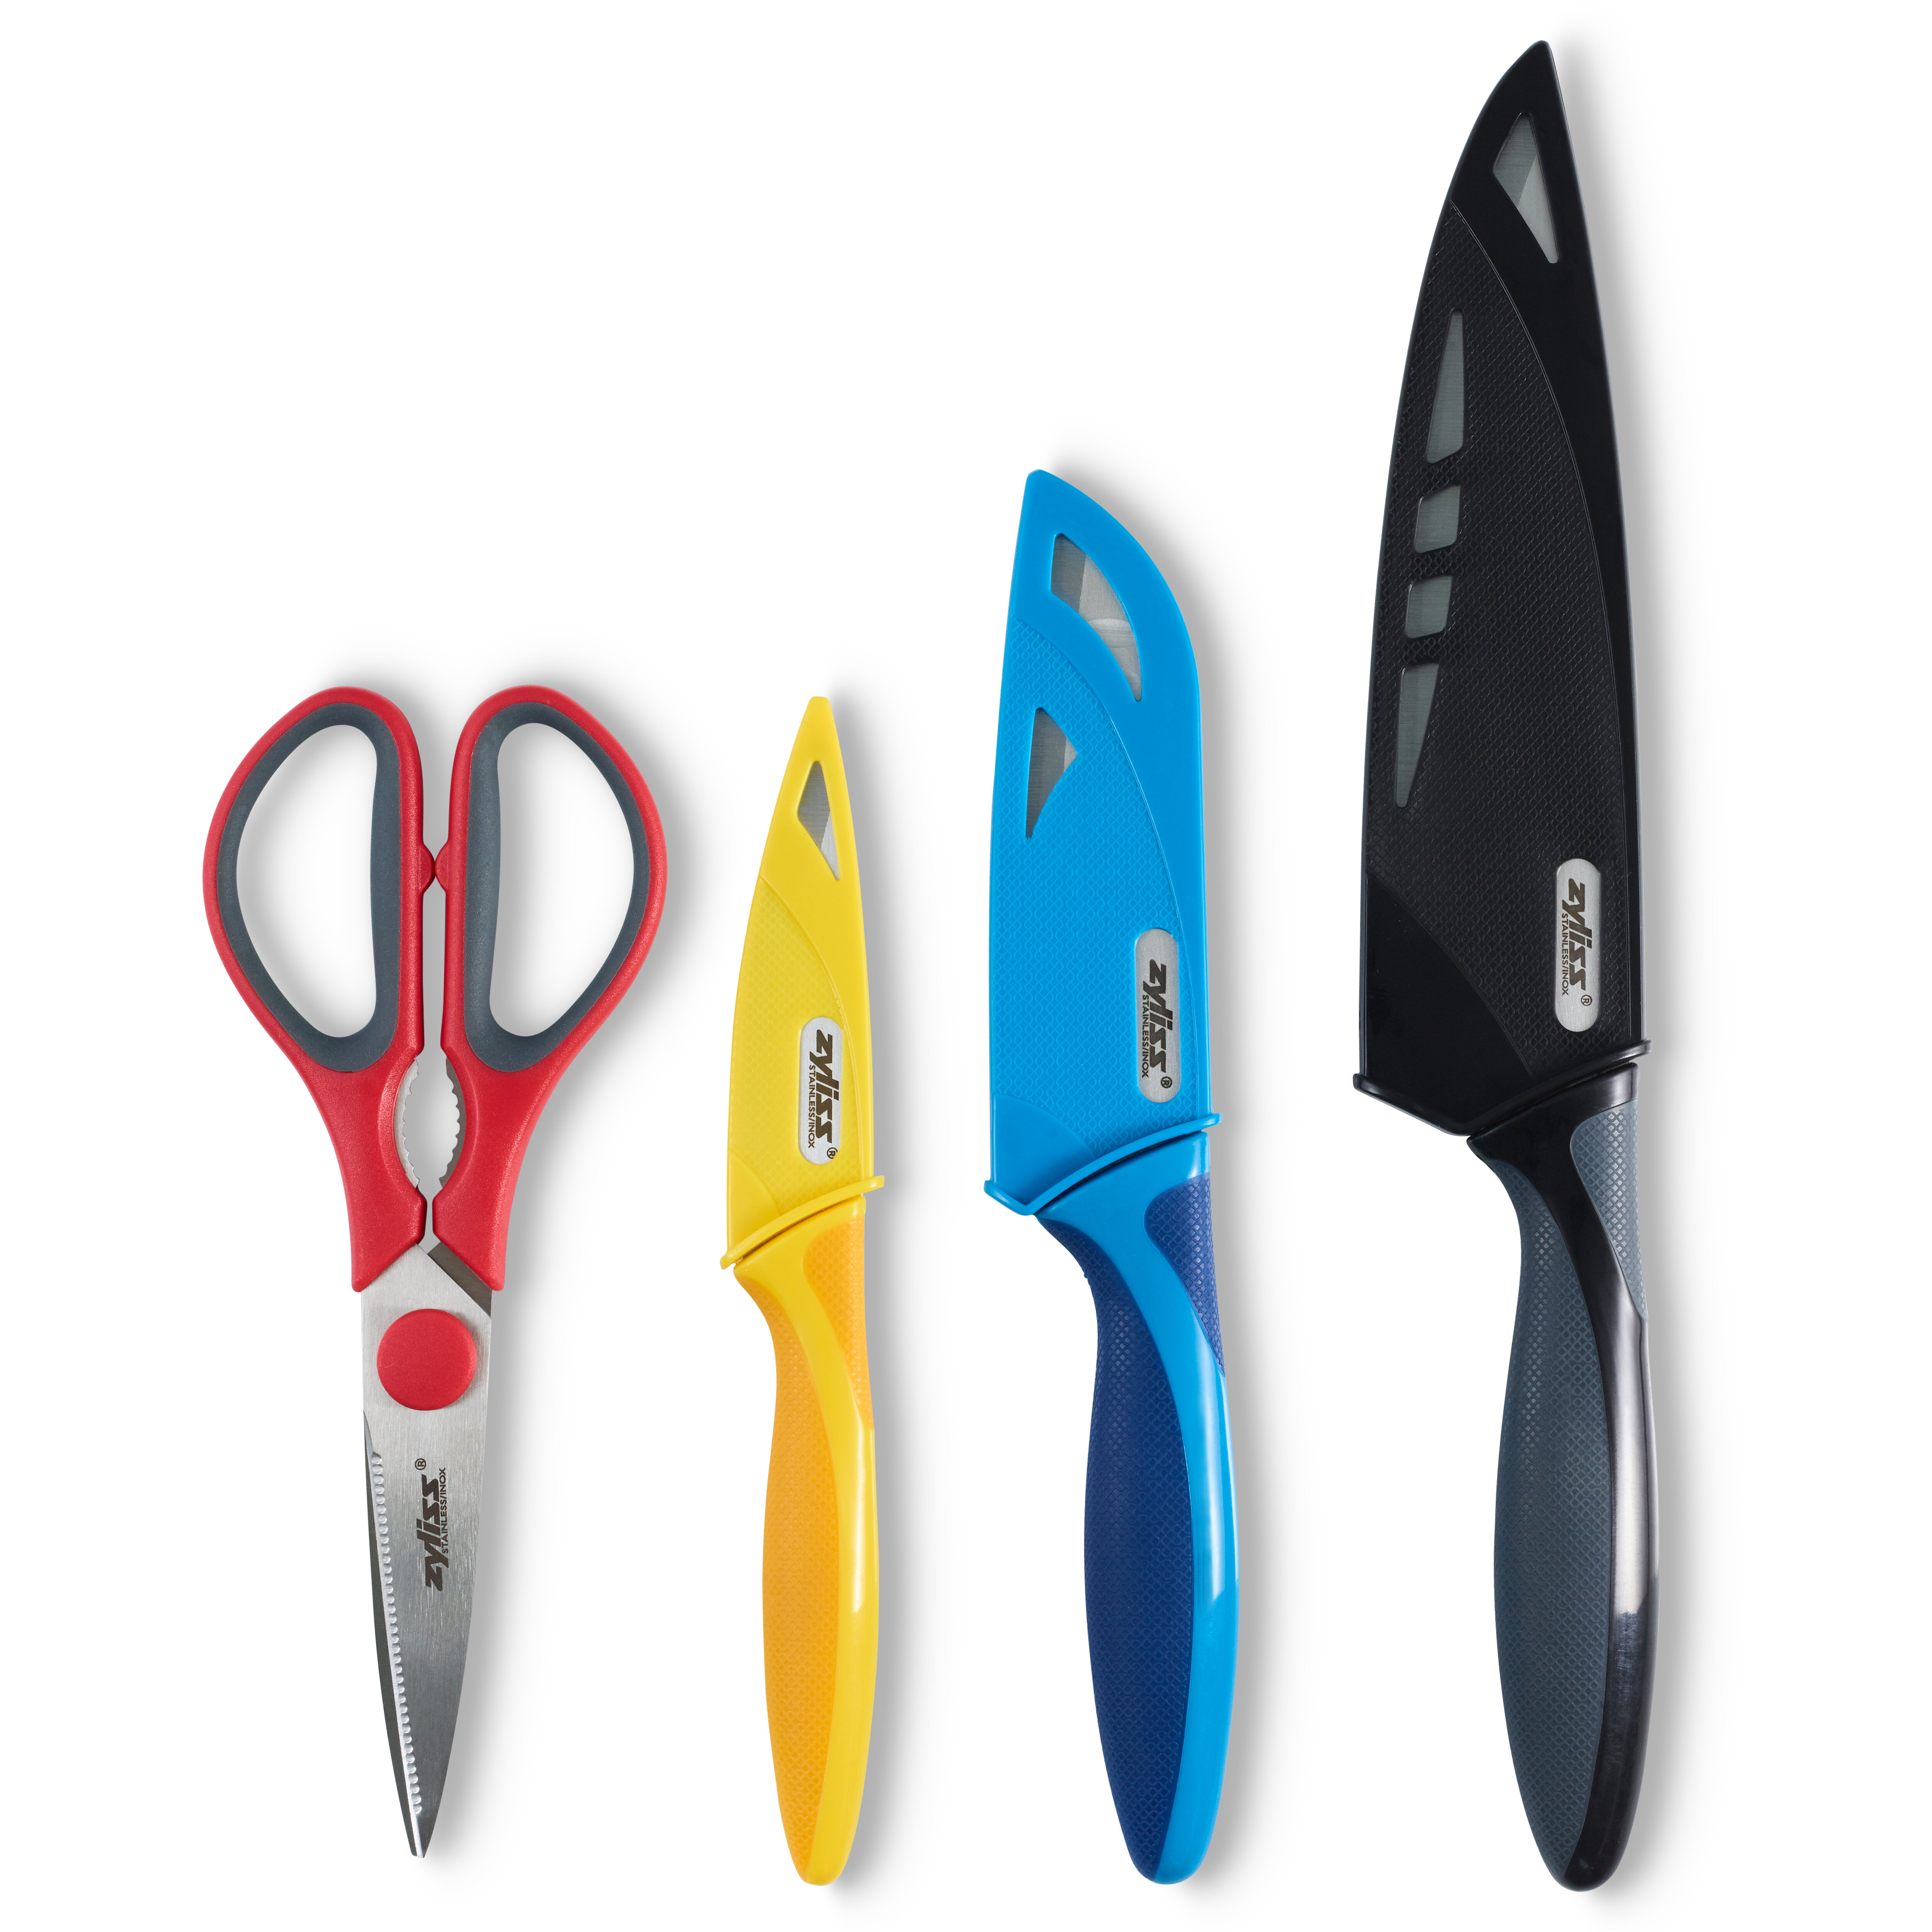 https://assets.wfcdn.com/im/05716236/compr-r85/4563/45636769/zyliss-4-piece-assorted-knife-scissor-set.jpg